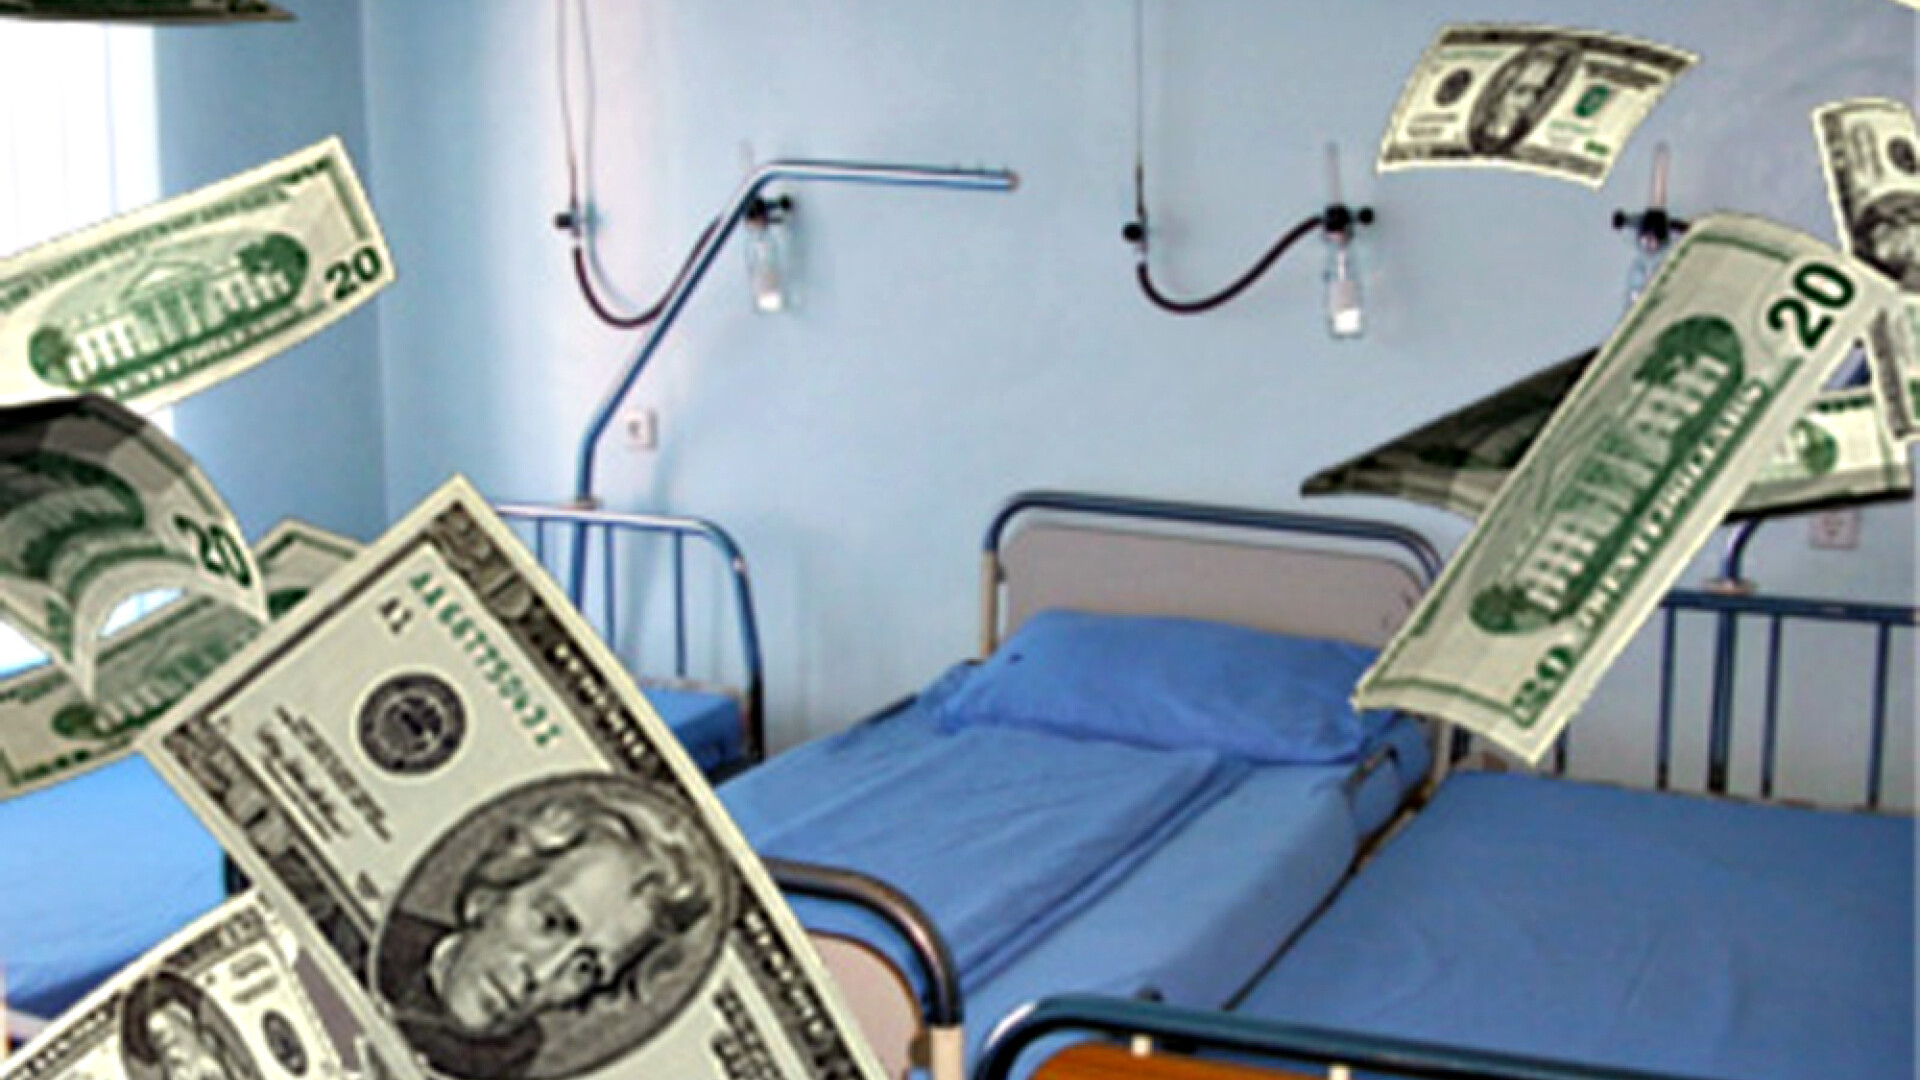 spital bani frauda